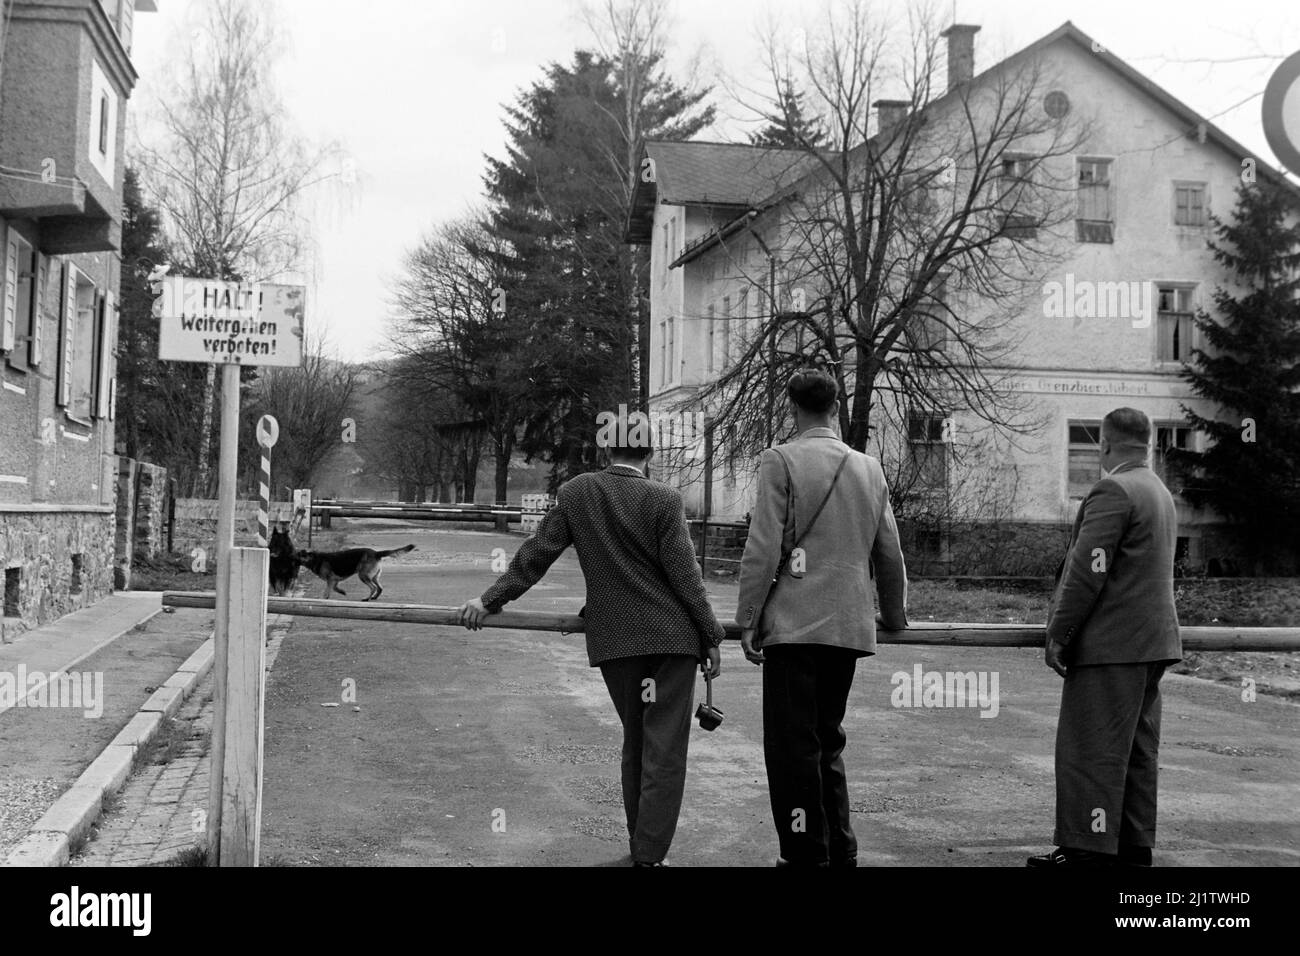 Besucher am Grenzübergang zur Tschechoslowakei, Bayerisch Eisenstein, 1958. Visitors at the border check point with Czechoslovakia at Bayerisch Eisenstein, 1958. Stock Photo